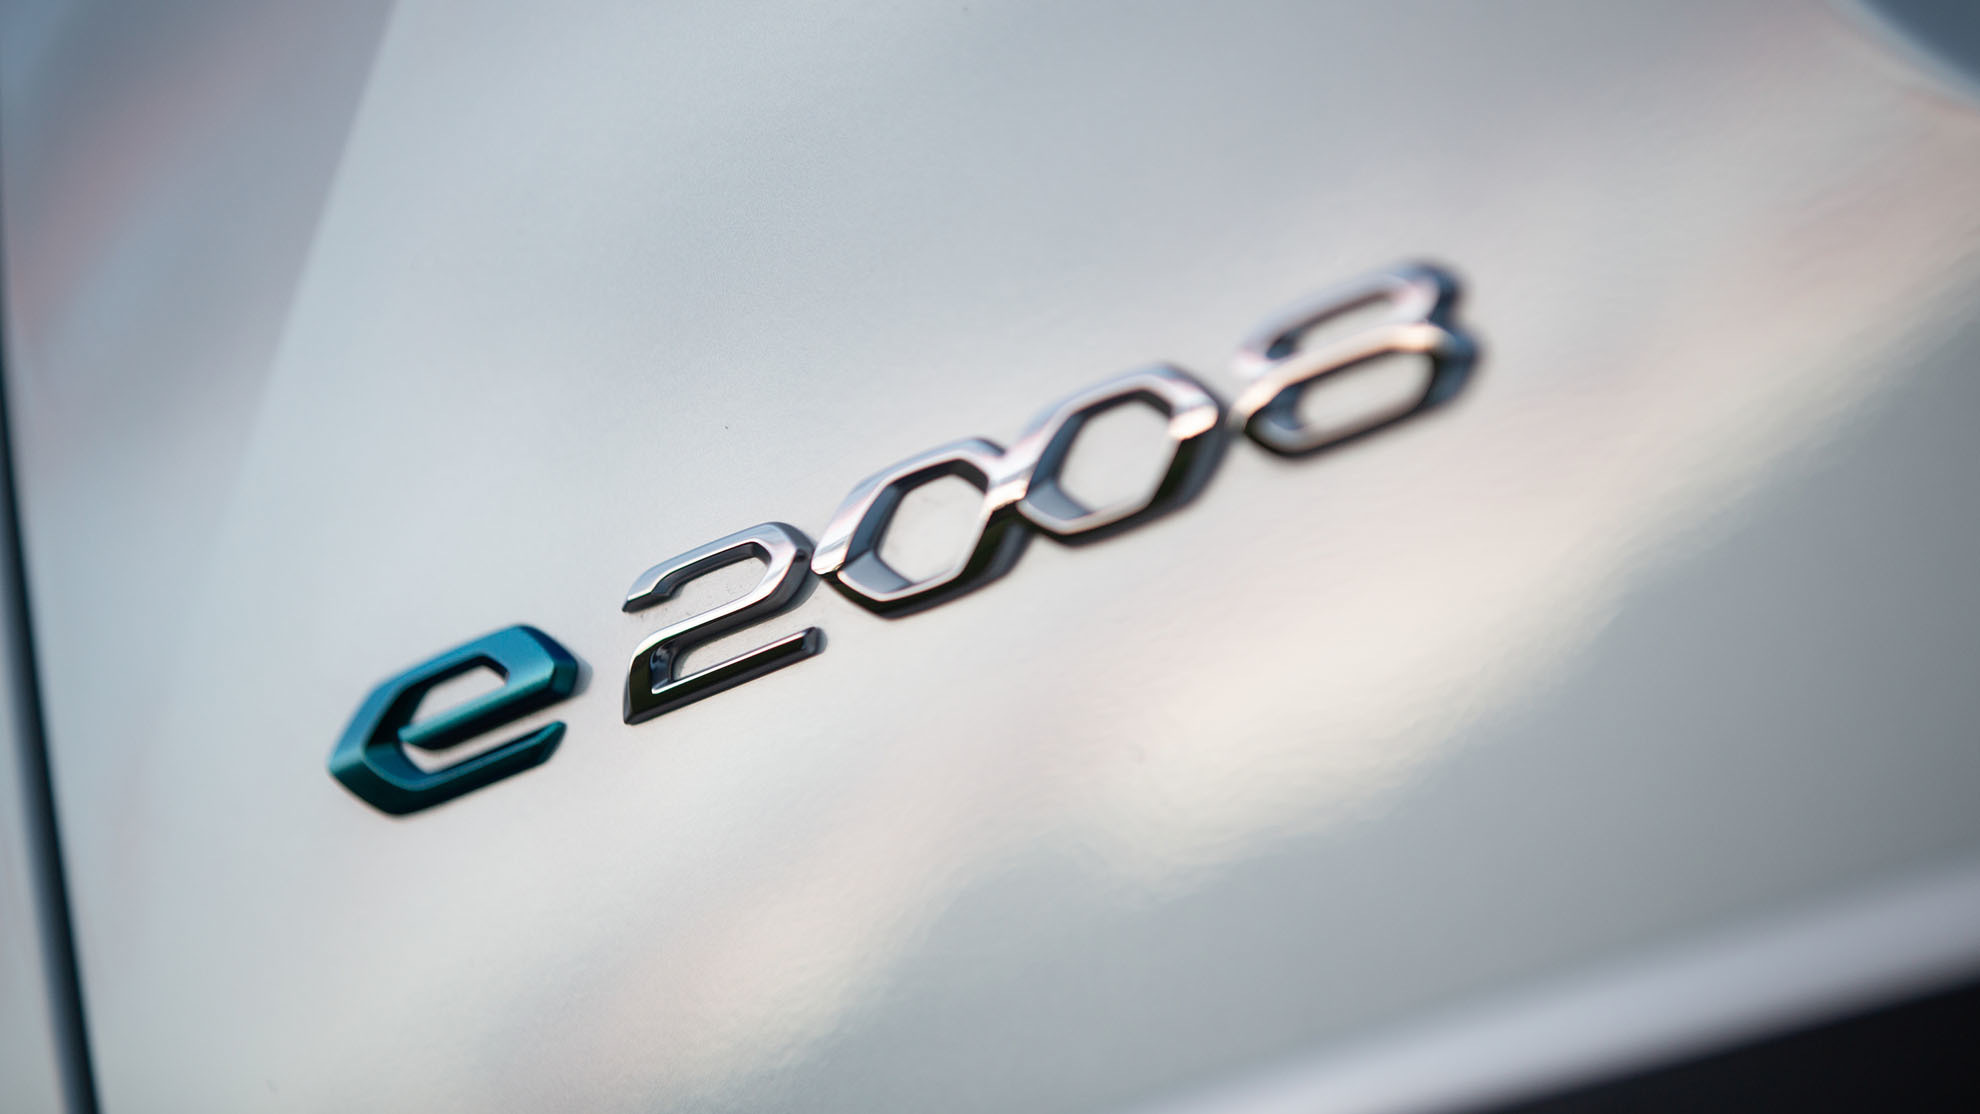 Peugeot - cien por cien electrica - solo coches electricos - Linda Jackson - ao 2030